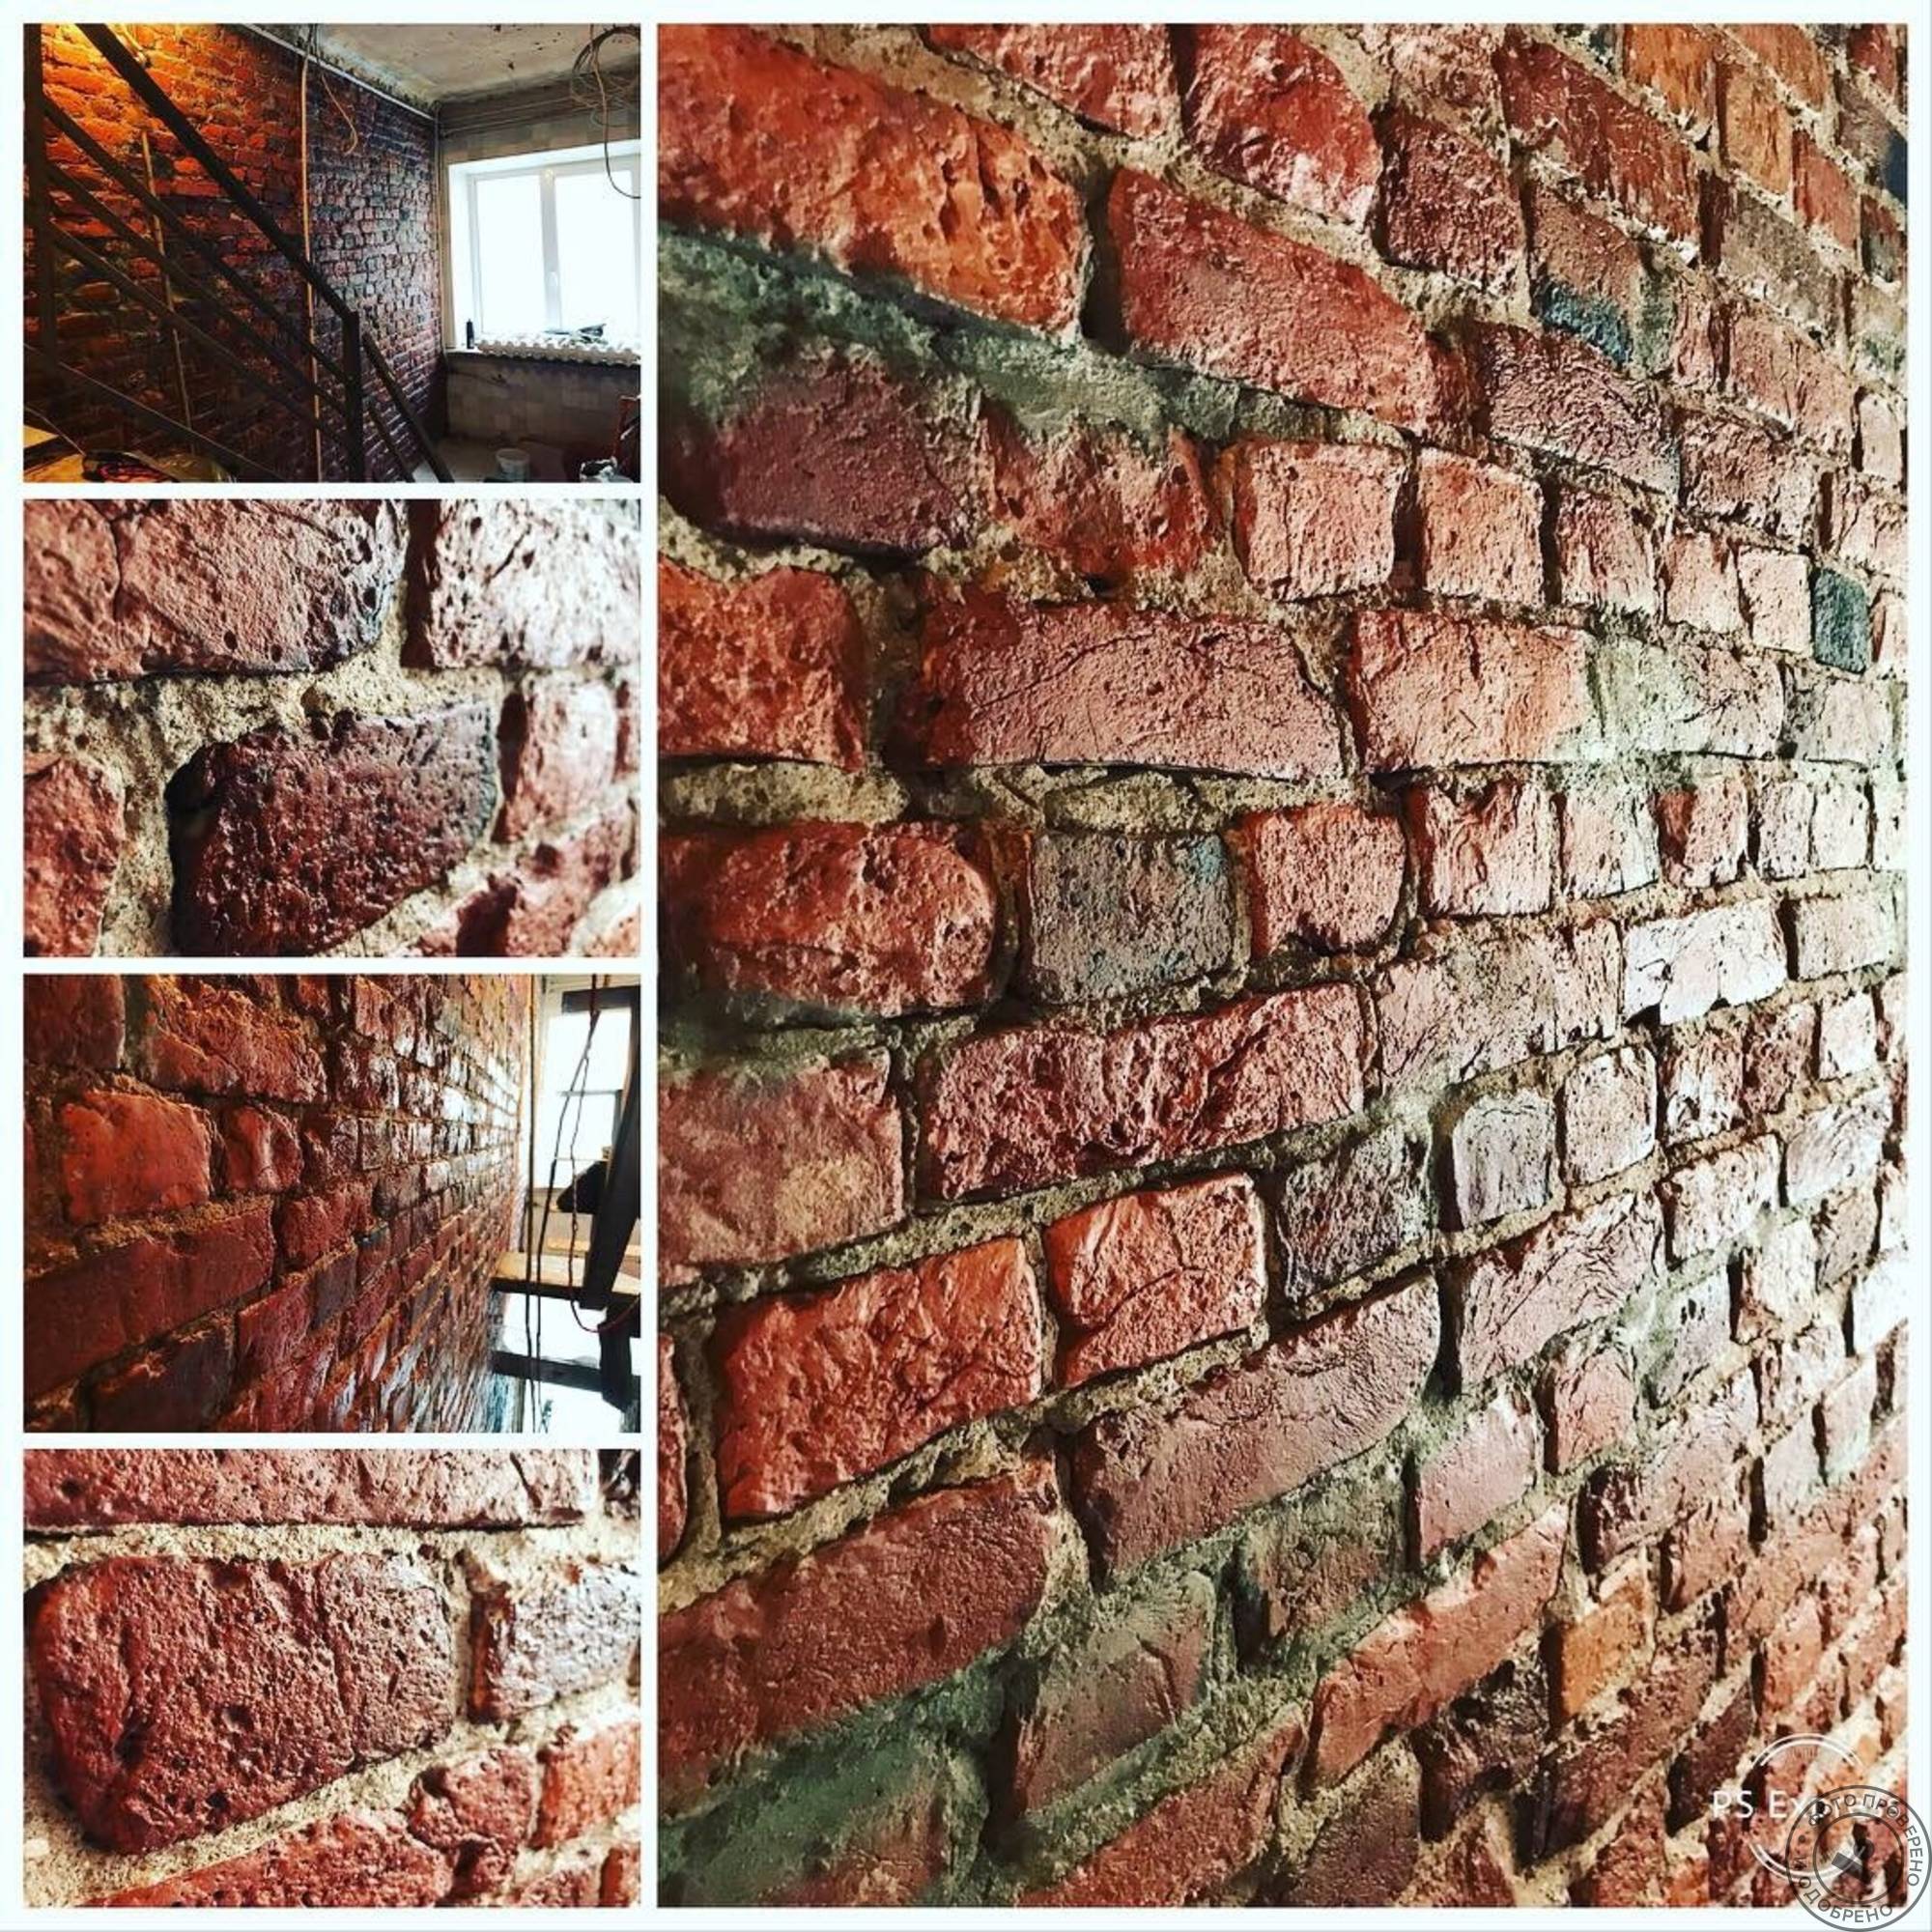 Ремонт кирпичной кладки стен отдельными местами: технология устранения дефектов разрушенной стены в квартире и восстановления наружных дыр